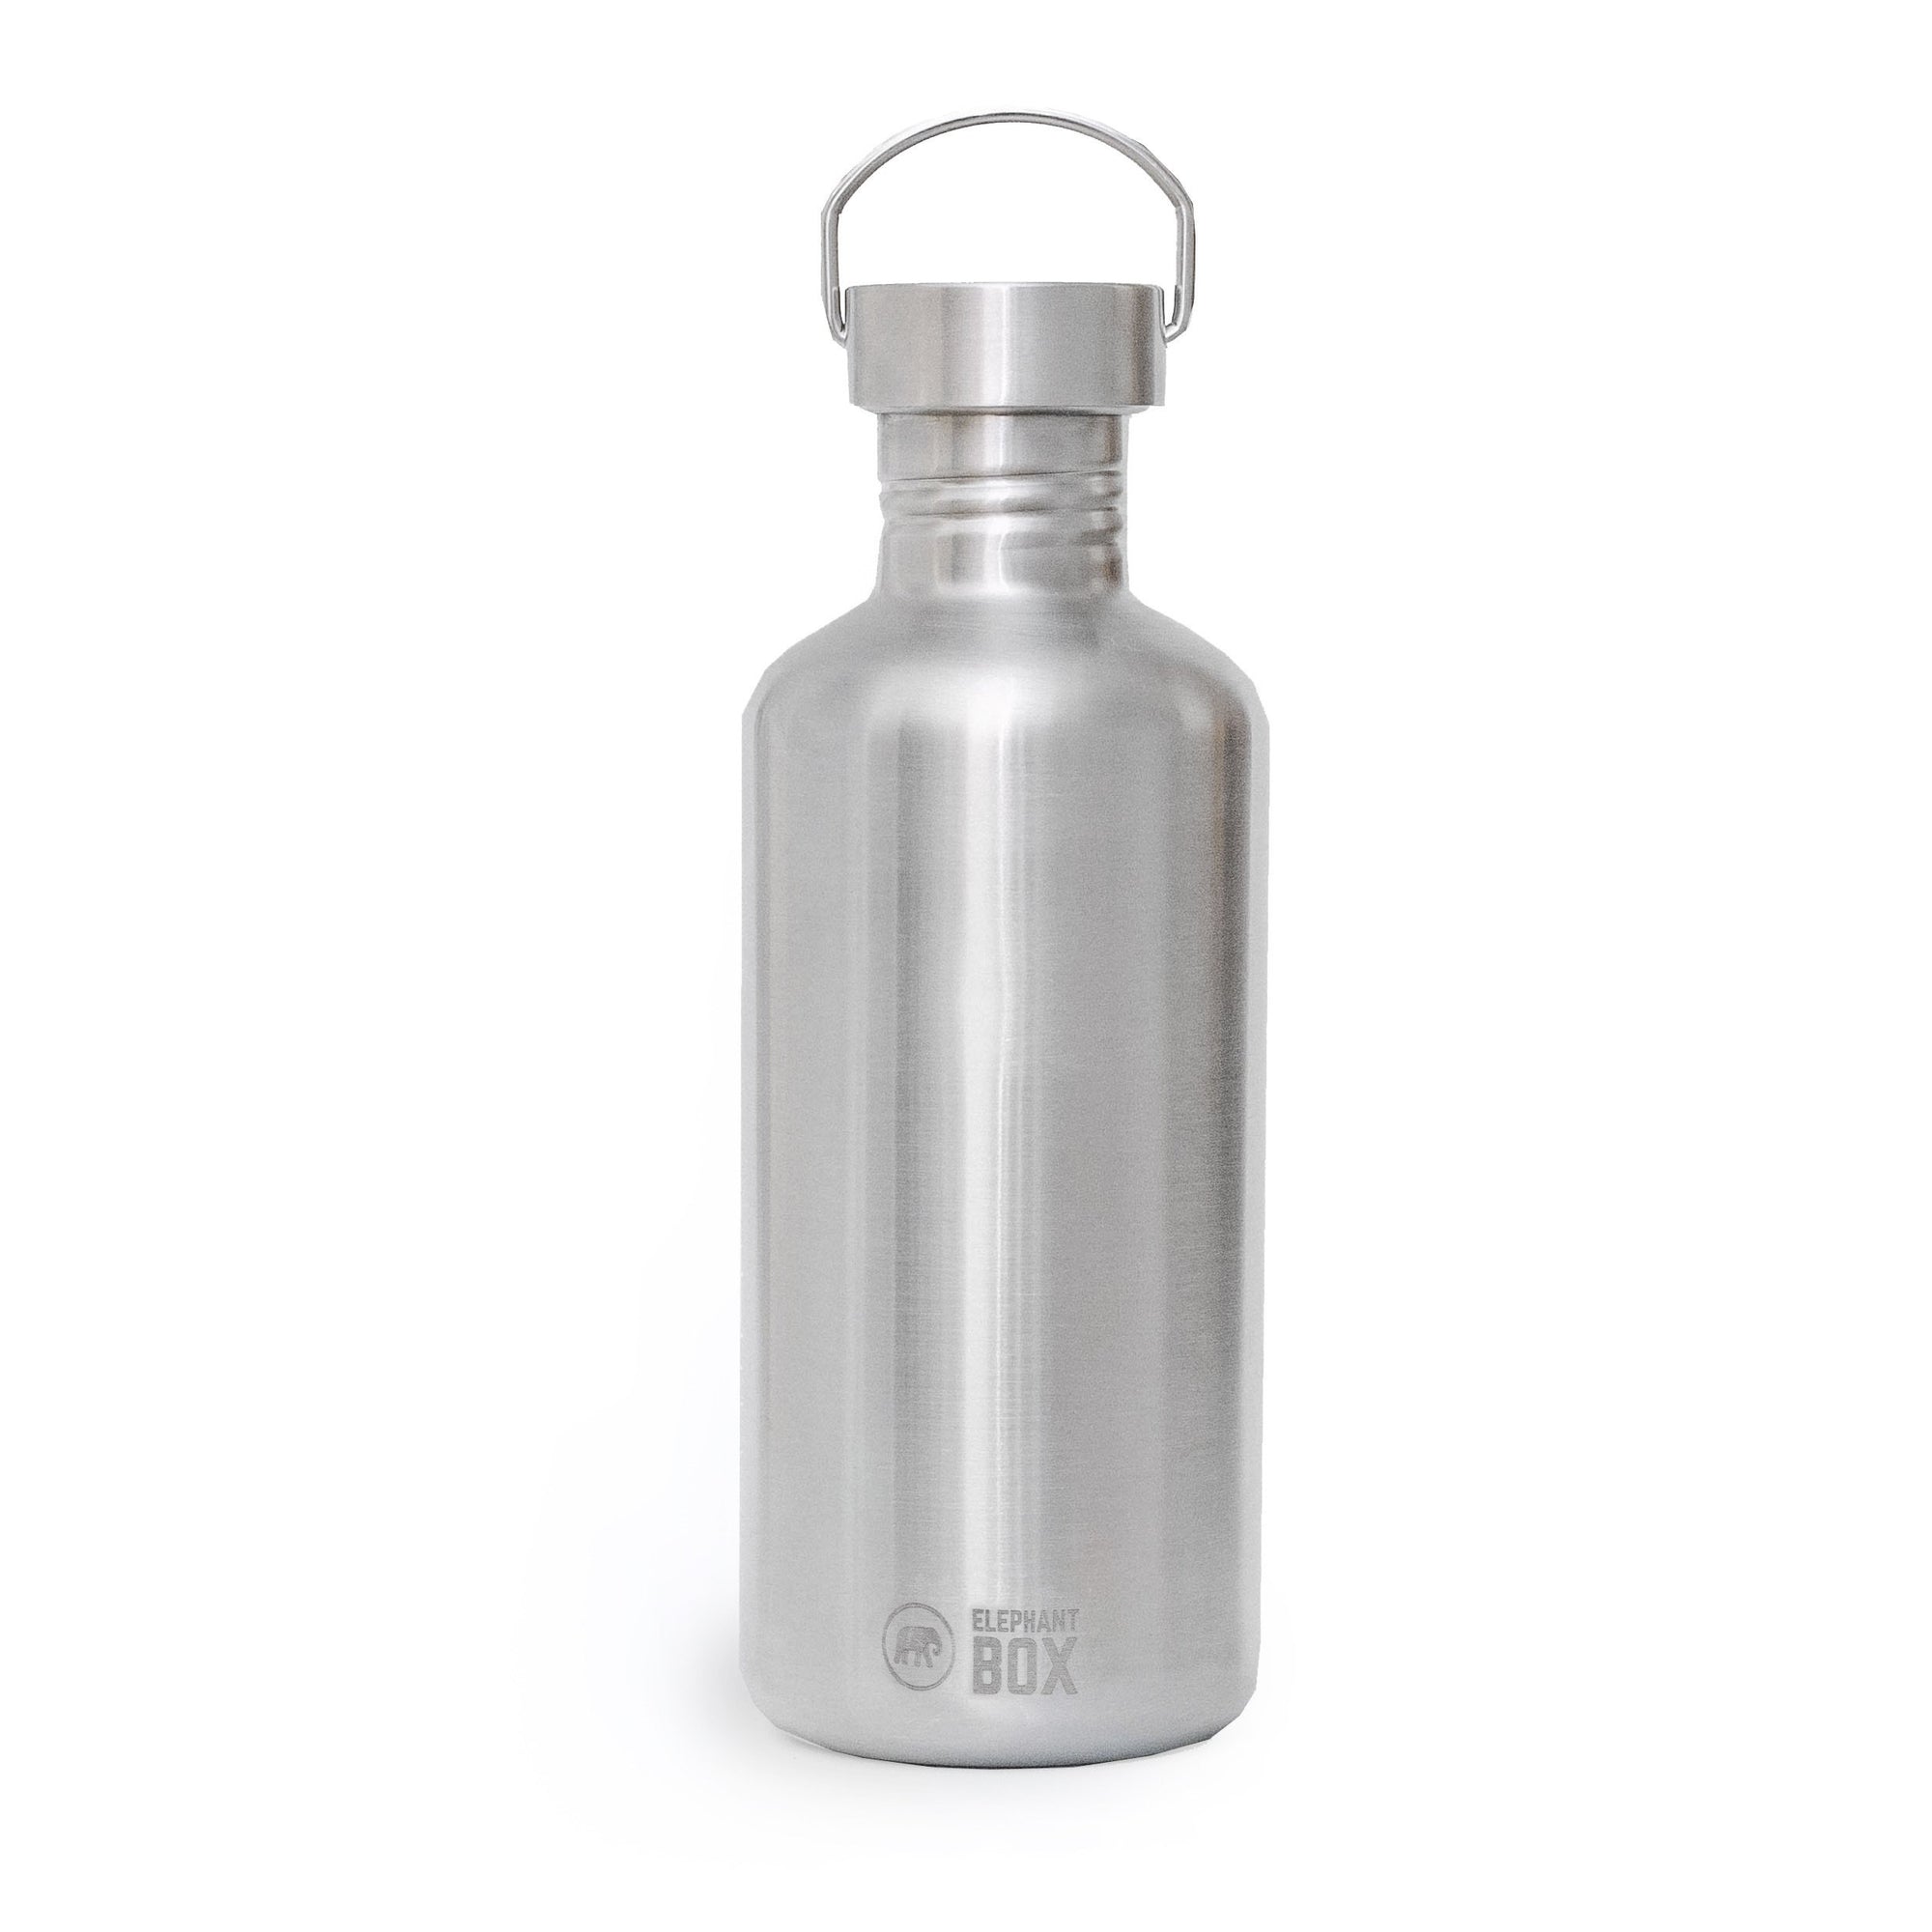 Single Wall Water Bottle 1.2 litre Elephant Box 